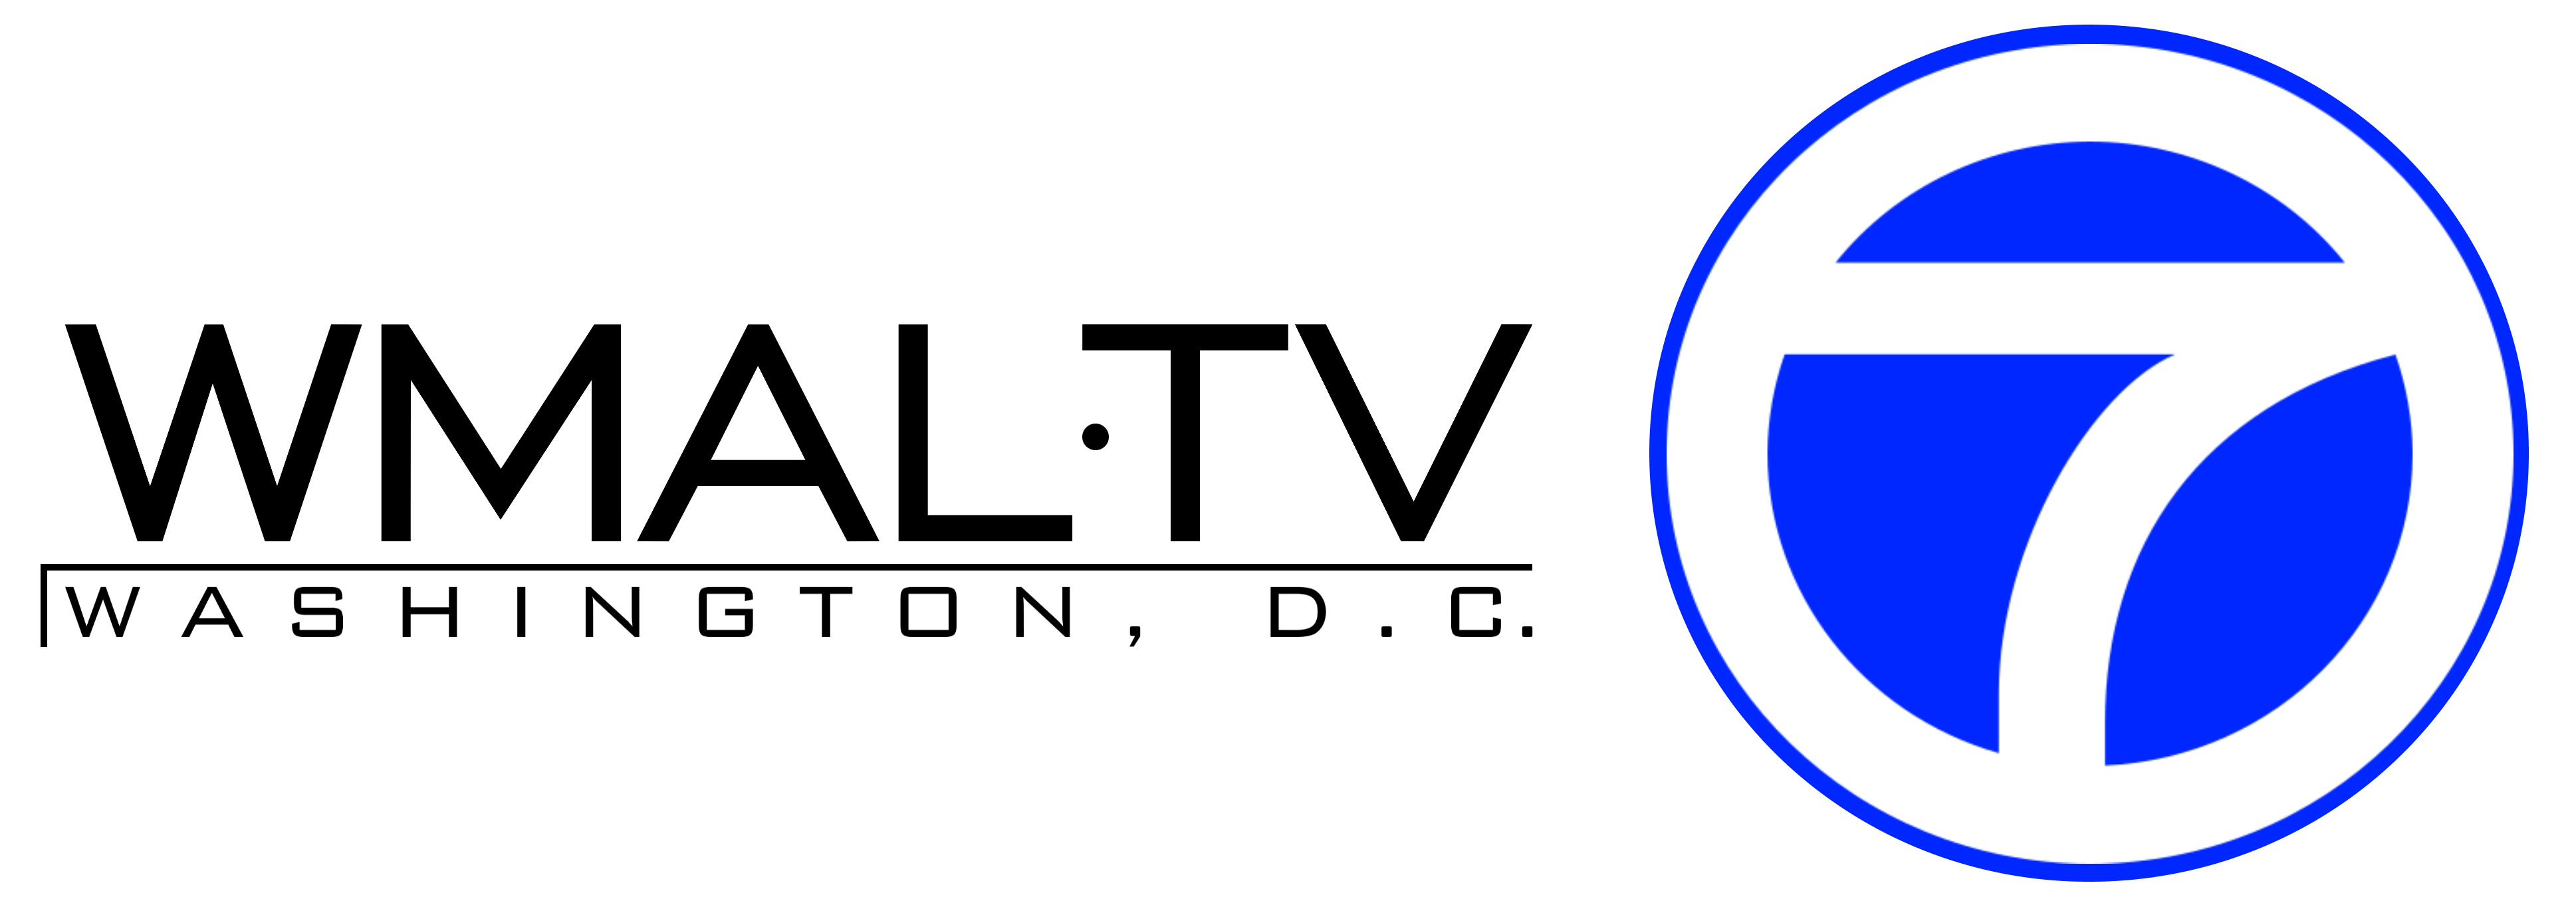 AlternateHistory.com's WMAL logo #1.png